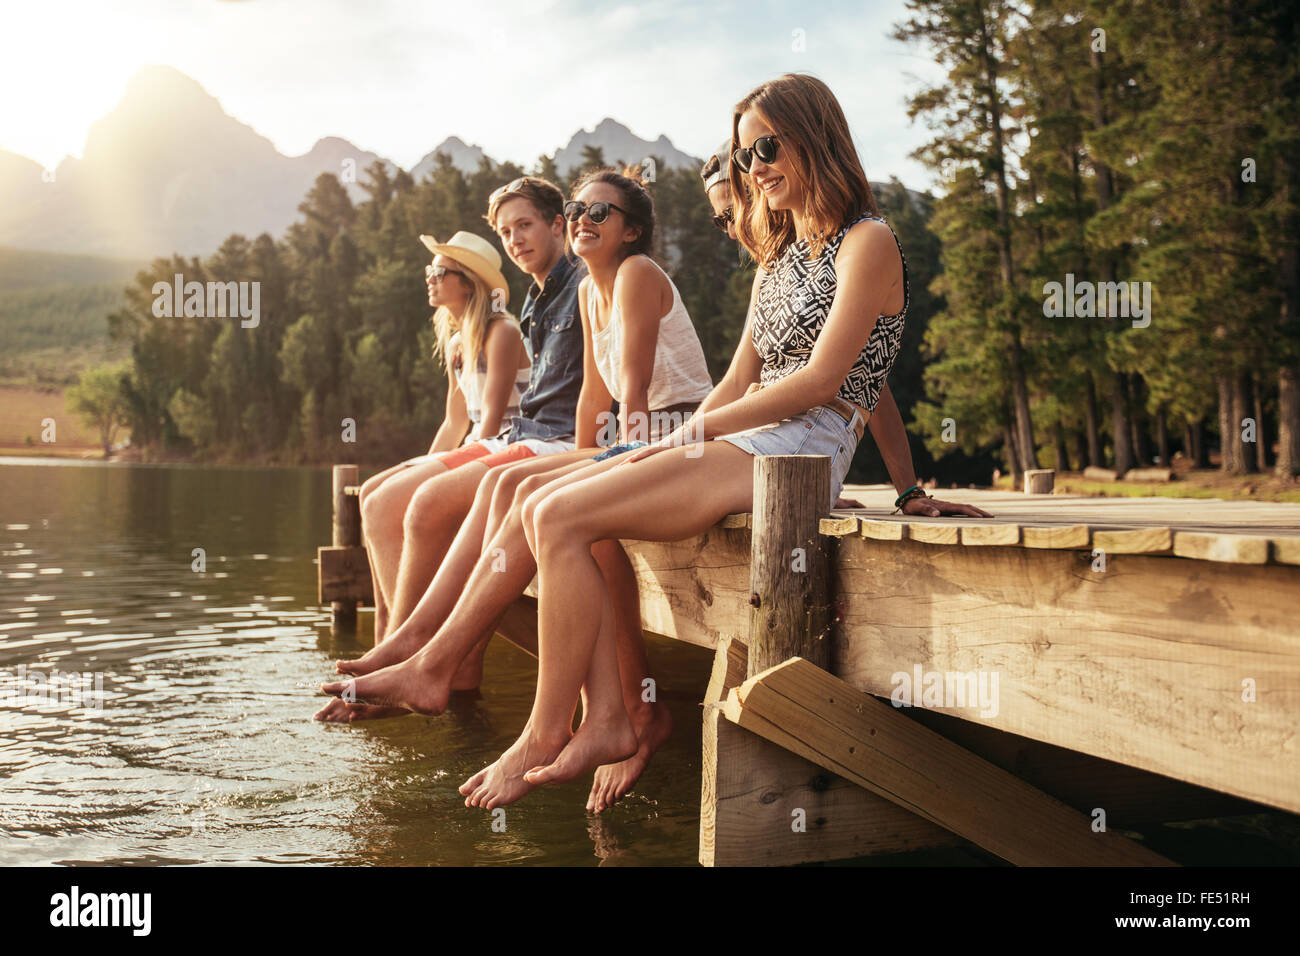 Ritratto di un gruppo di giovani seduti sul bordo di un molo, all'aperto in natura. Amici godendo una giornata al lago. Foto Stock